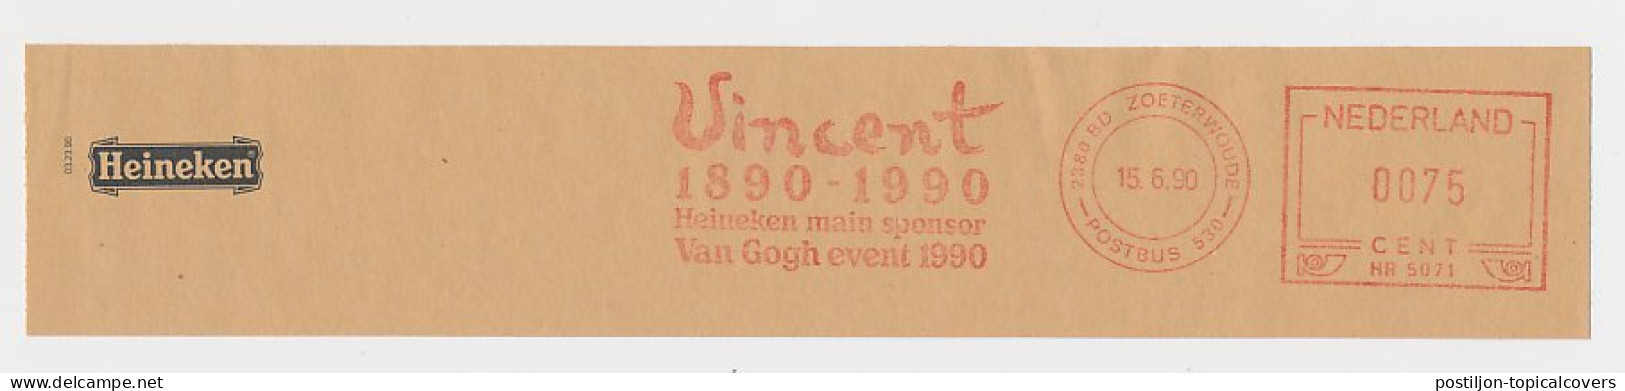 Meter Top Cut Netherlands 1990 - Hasler 5071 Vincent Van Gogh - Van Gogh Event - Heineken Main Sponsor - Other & Unclassified